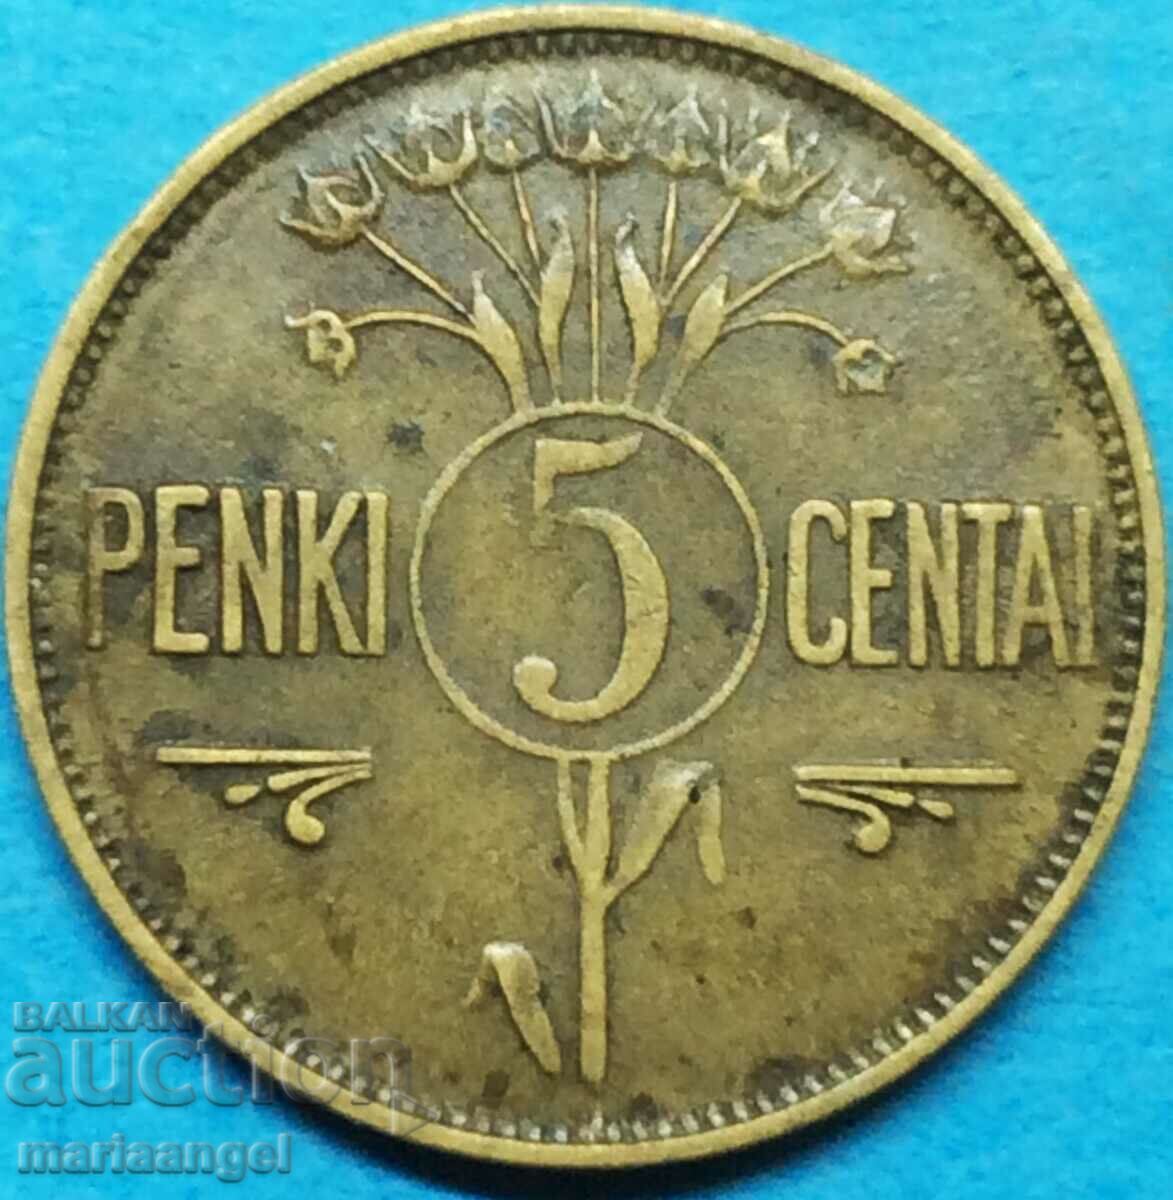 Литва 1925 5 центаи